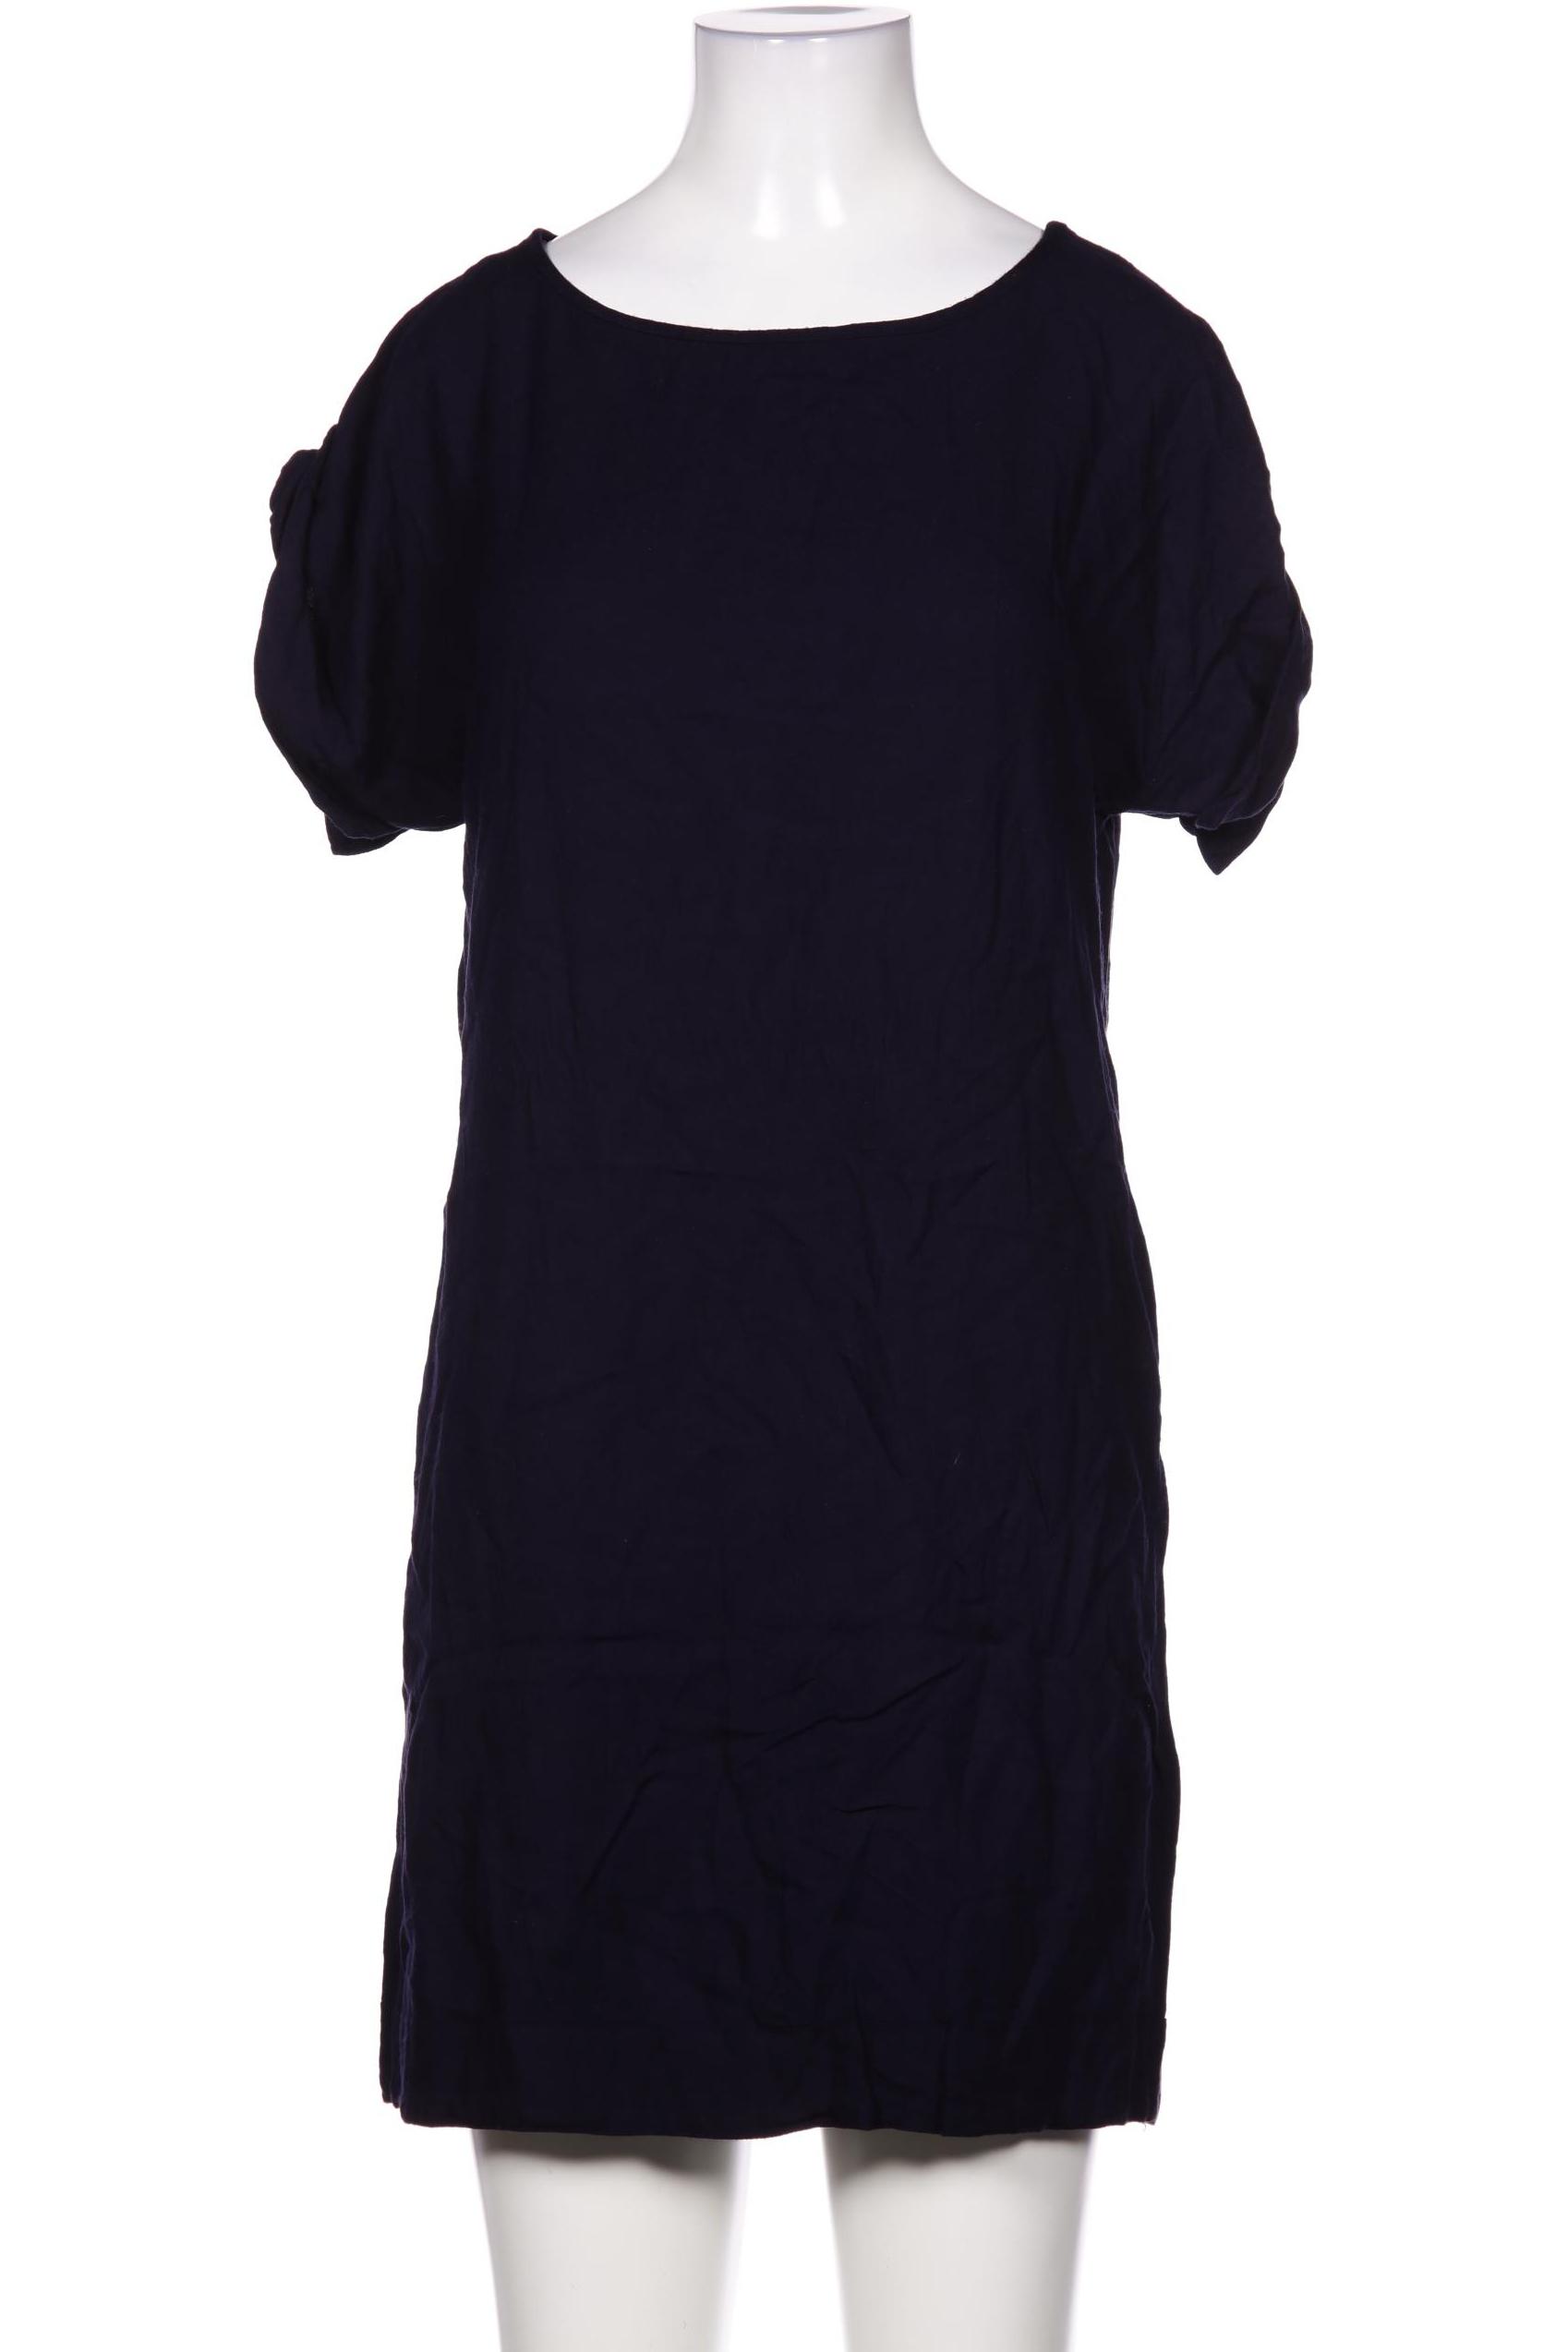 Kookai Damen Kleid, marineblau von Kookai